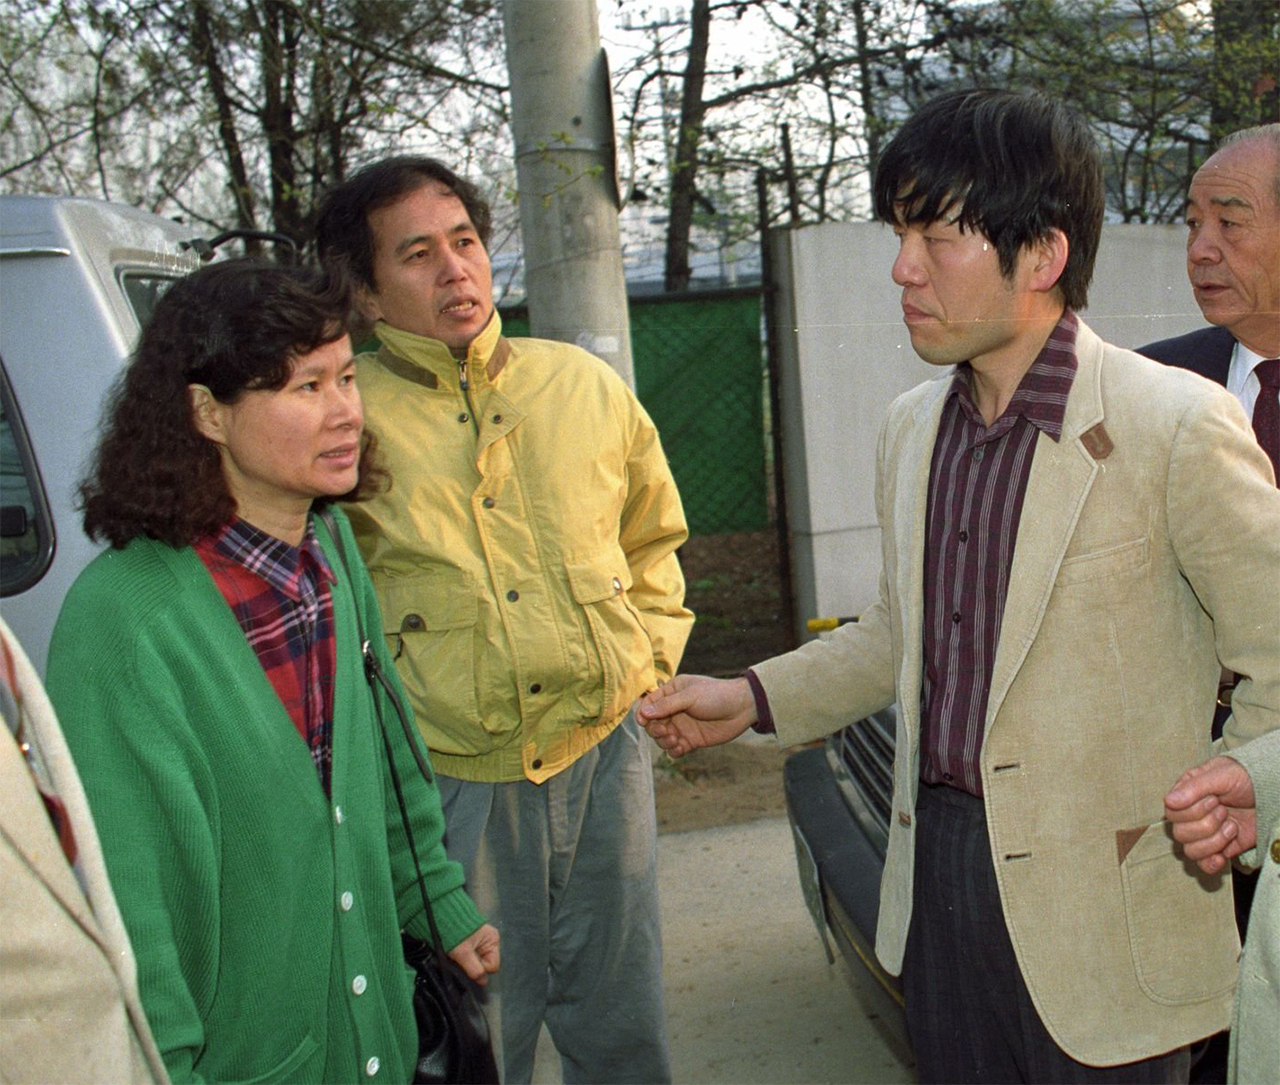 권형택(오른쪽)이 1990년 전민련 활동으로 투옥된 뒤 출감하는 모습. 부인 황인숙이 그를 마중하고 있다 